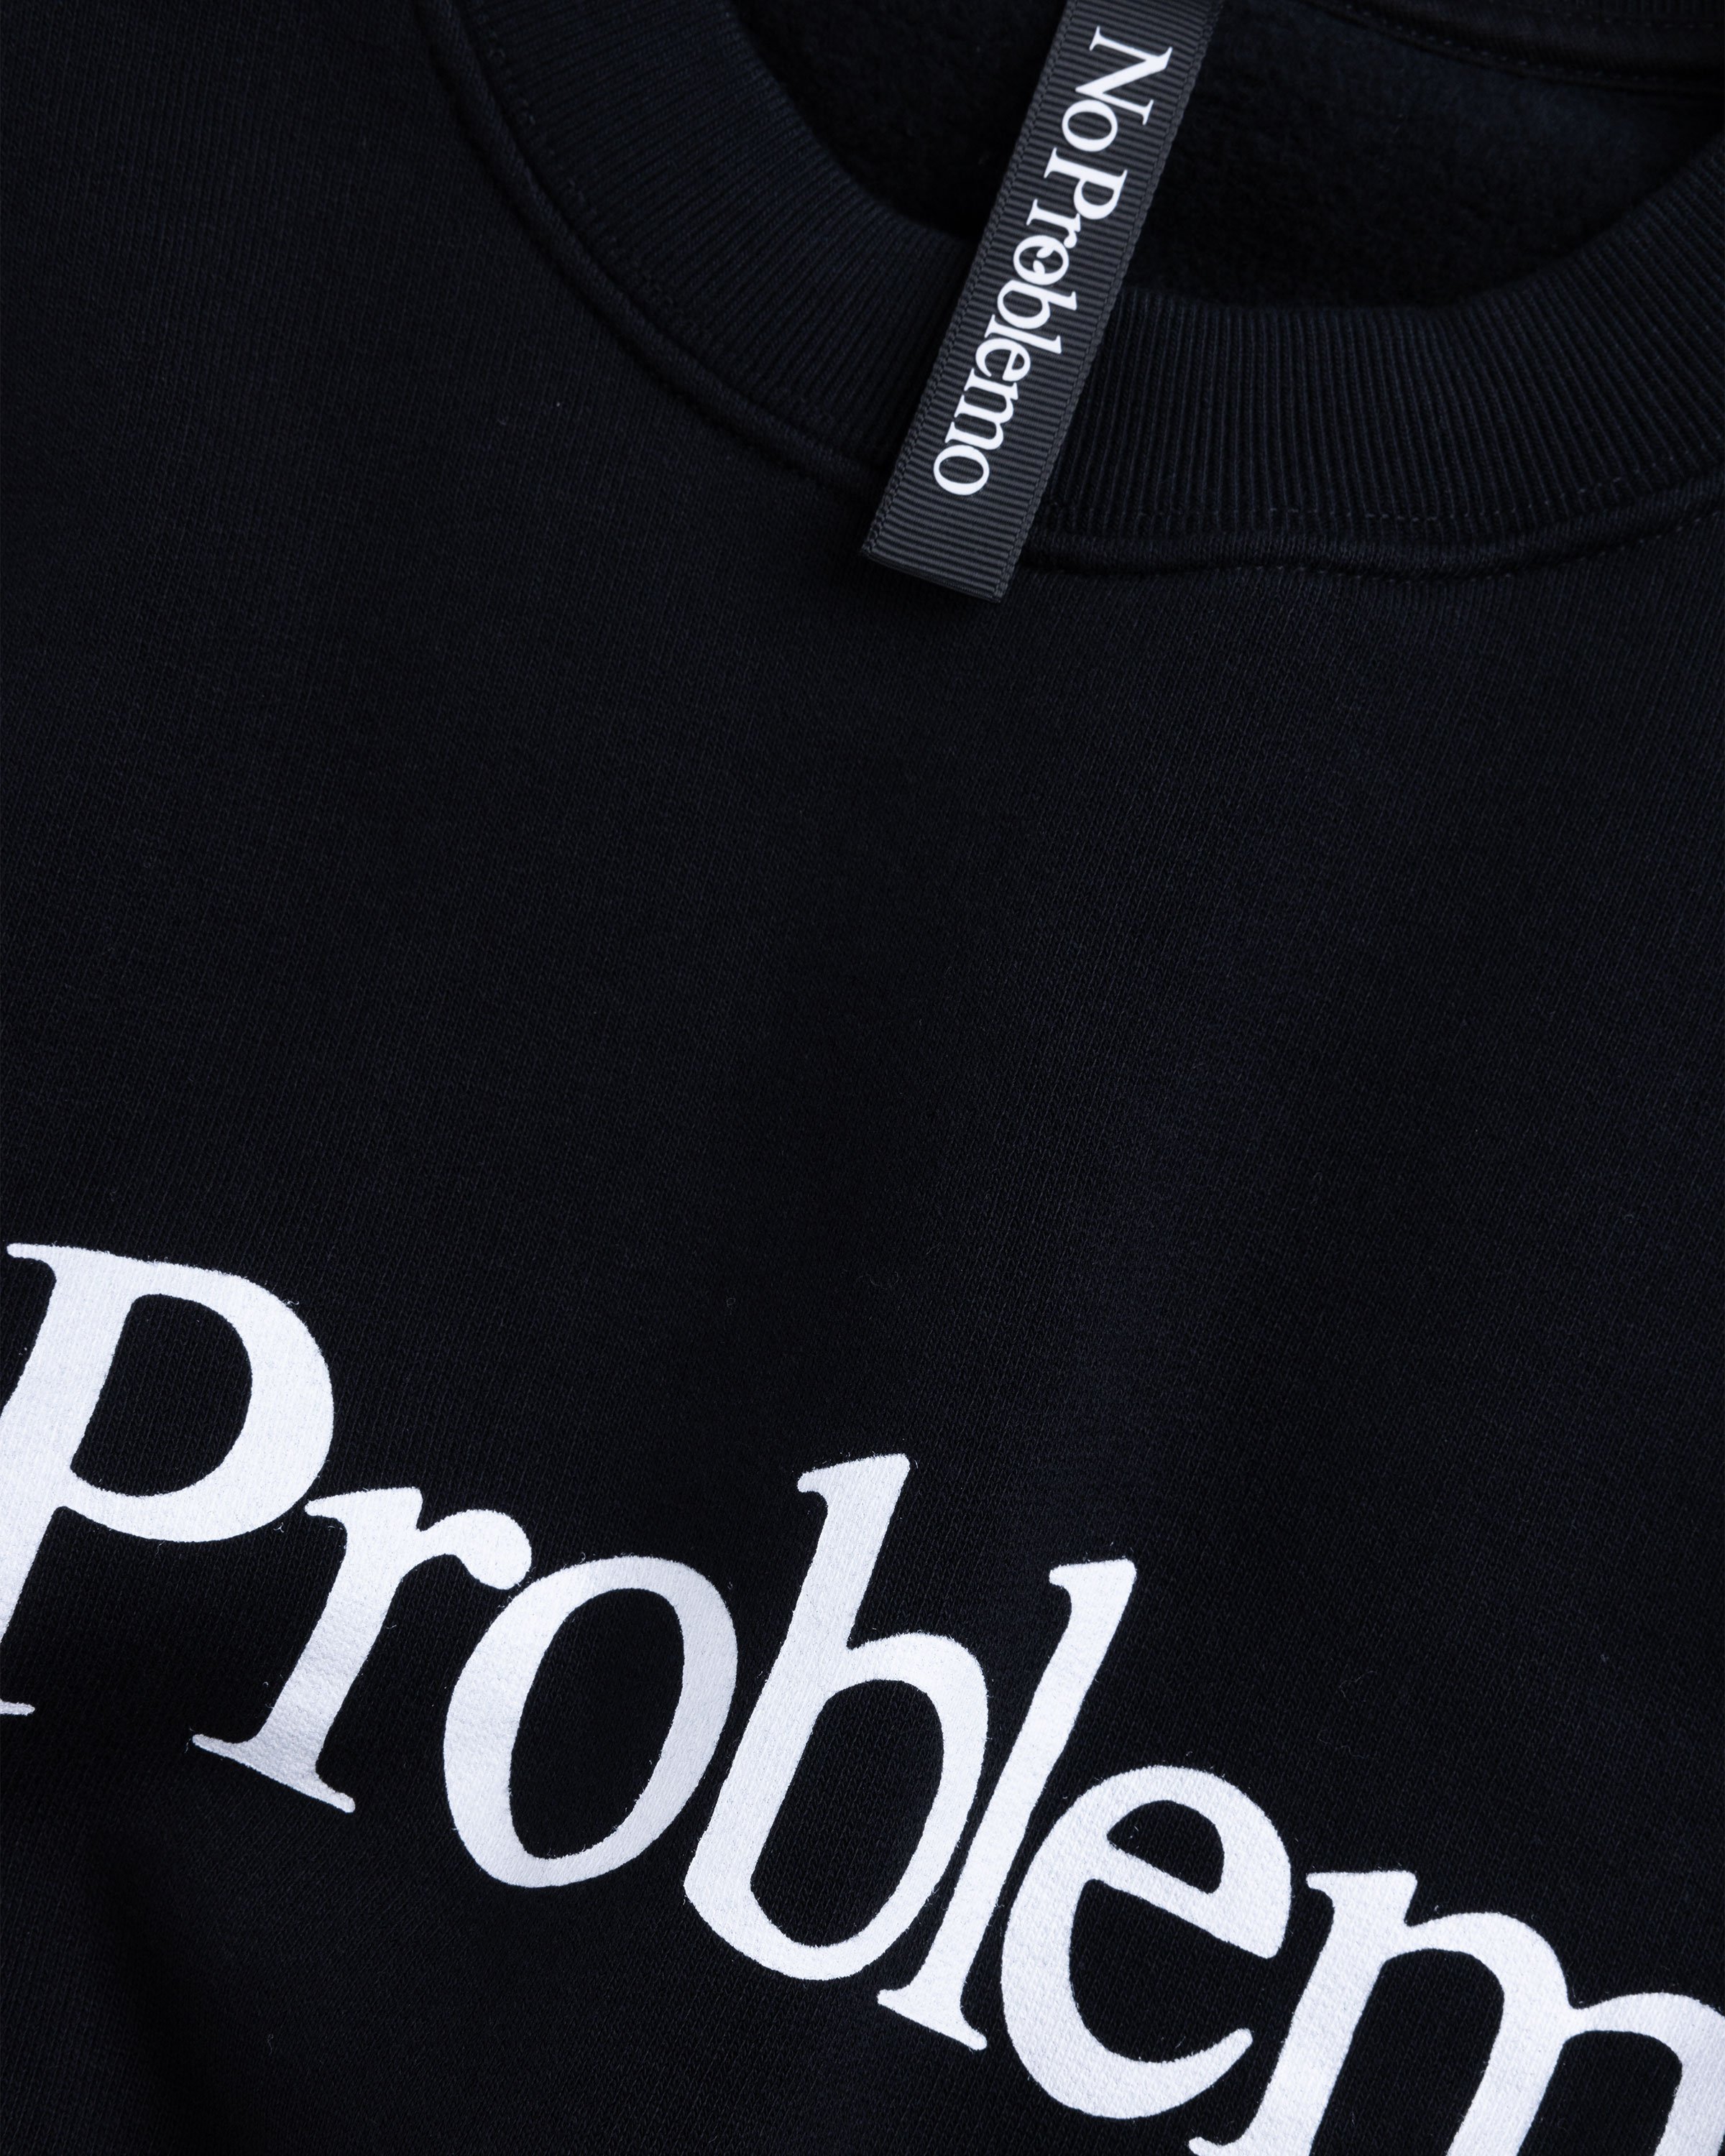 Aries - No Problemo Sweatshirt Black - Clothing - Black - Image 6